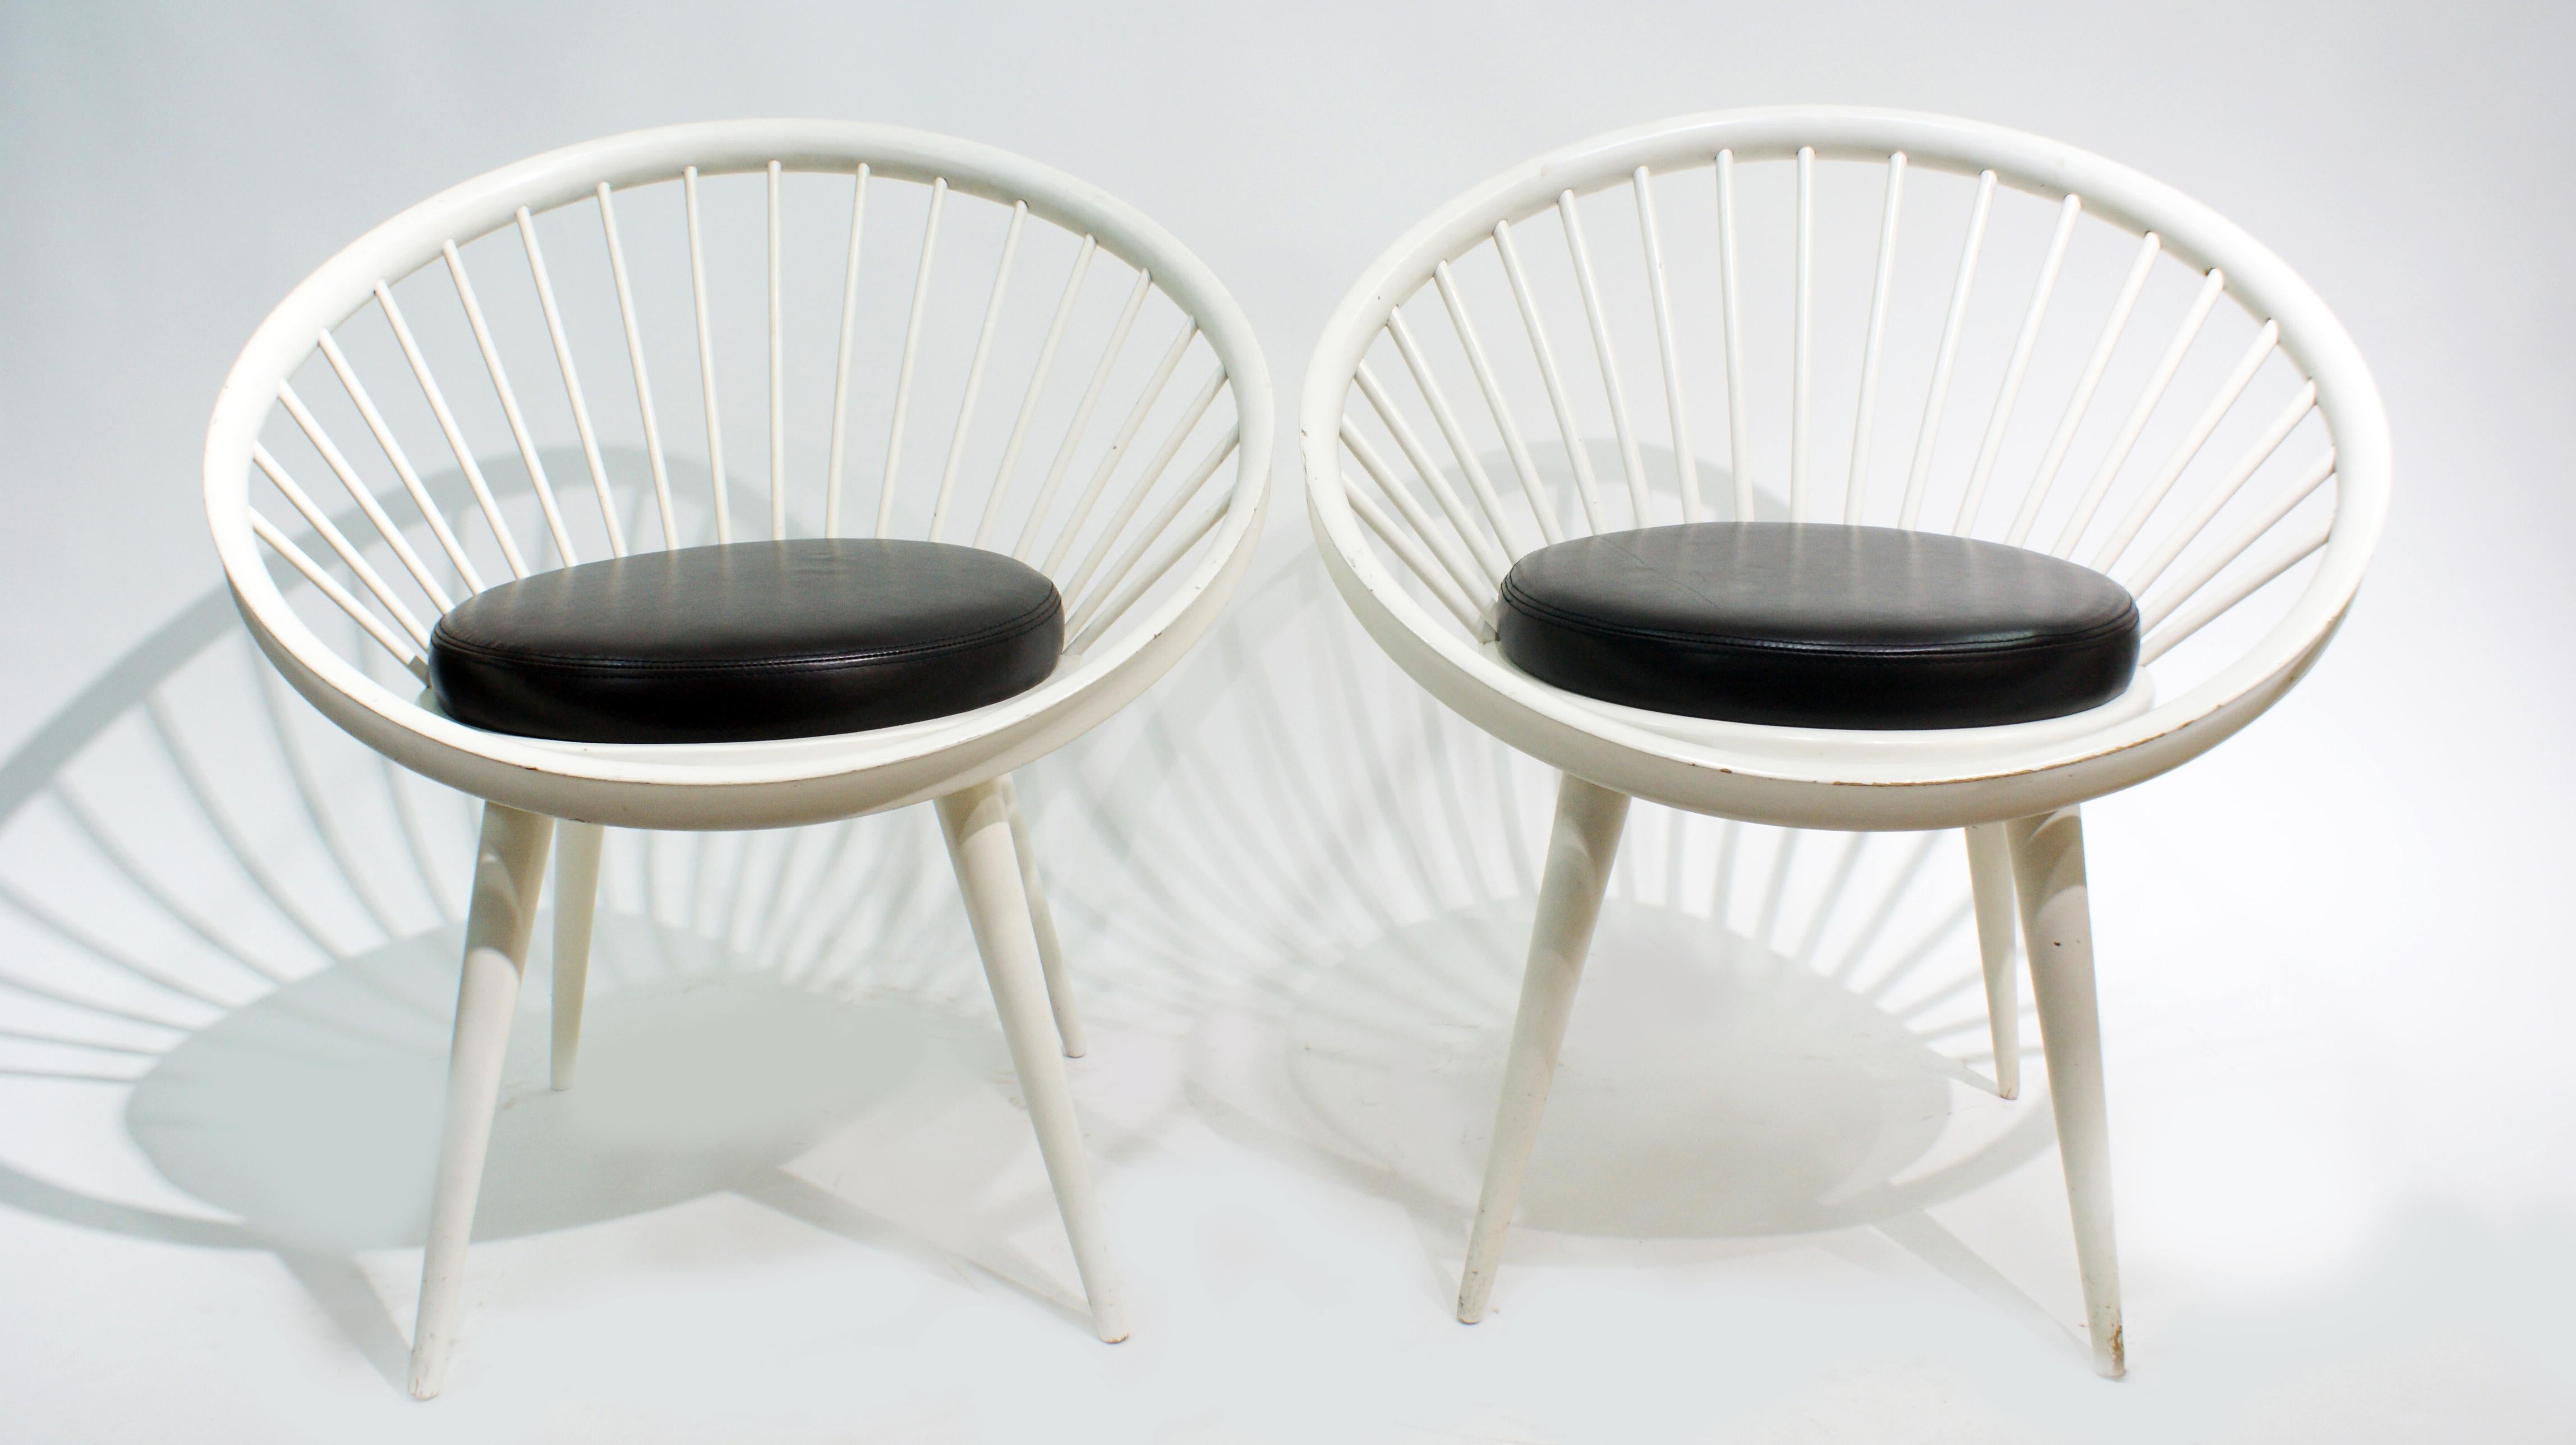 Ein Paar Lounge-Sessel von Yngve Ekström für Swedese, um 1960.
Die Stühle haben dunkelbraune Ledersitze mit weiß lackiertem Buchenholzgestell.
Yngve Ekström (1913-1988) war ein Architekt, Holzarbeiter und Möbeldesigner aus Hagafors, Småland, in